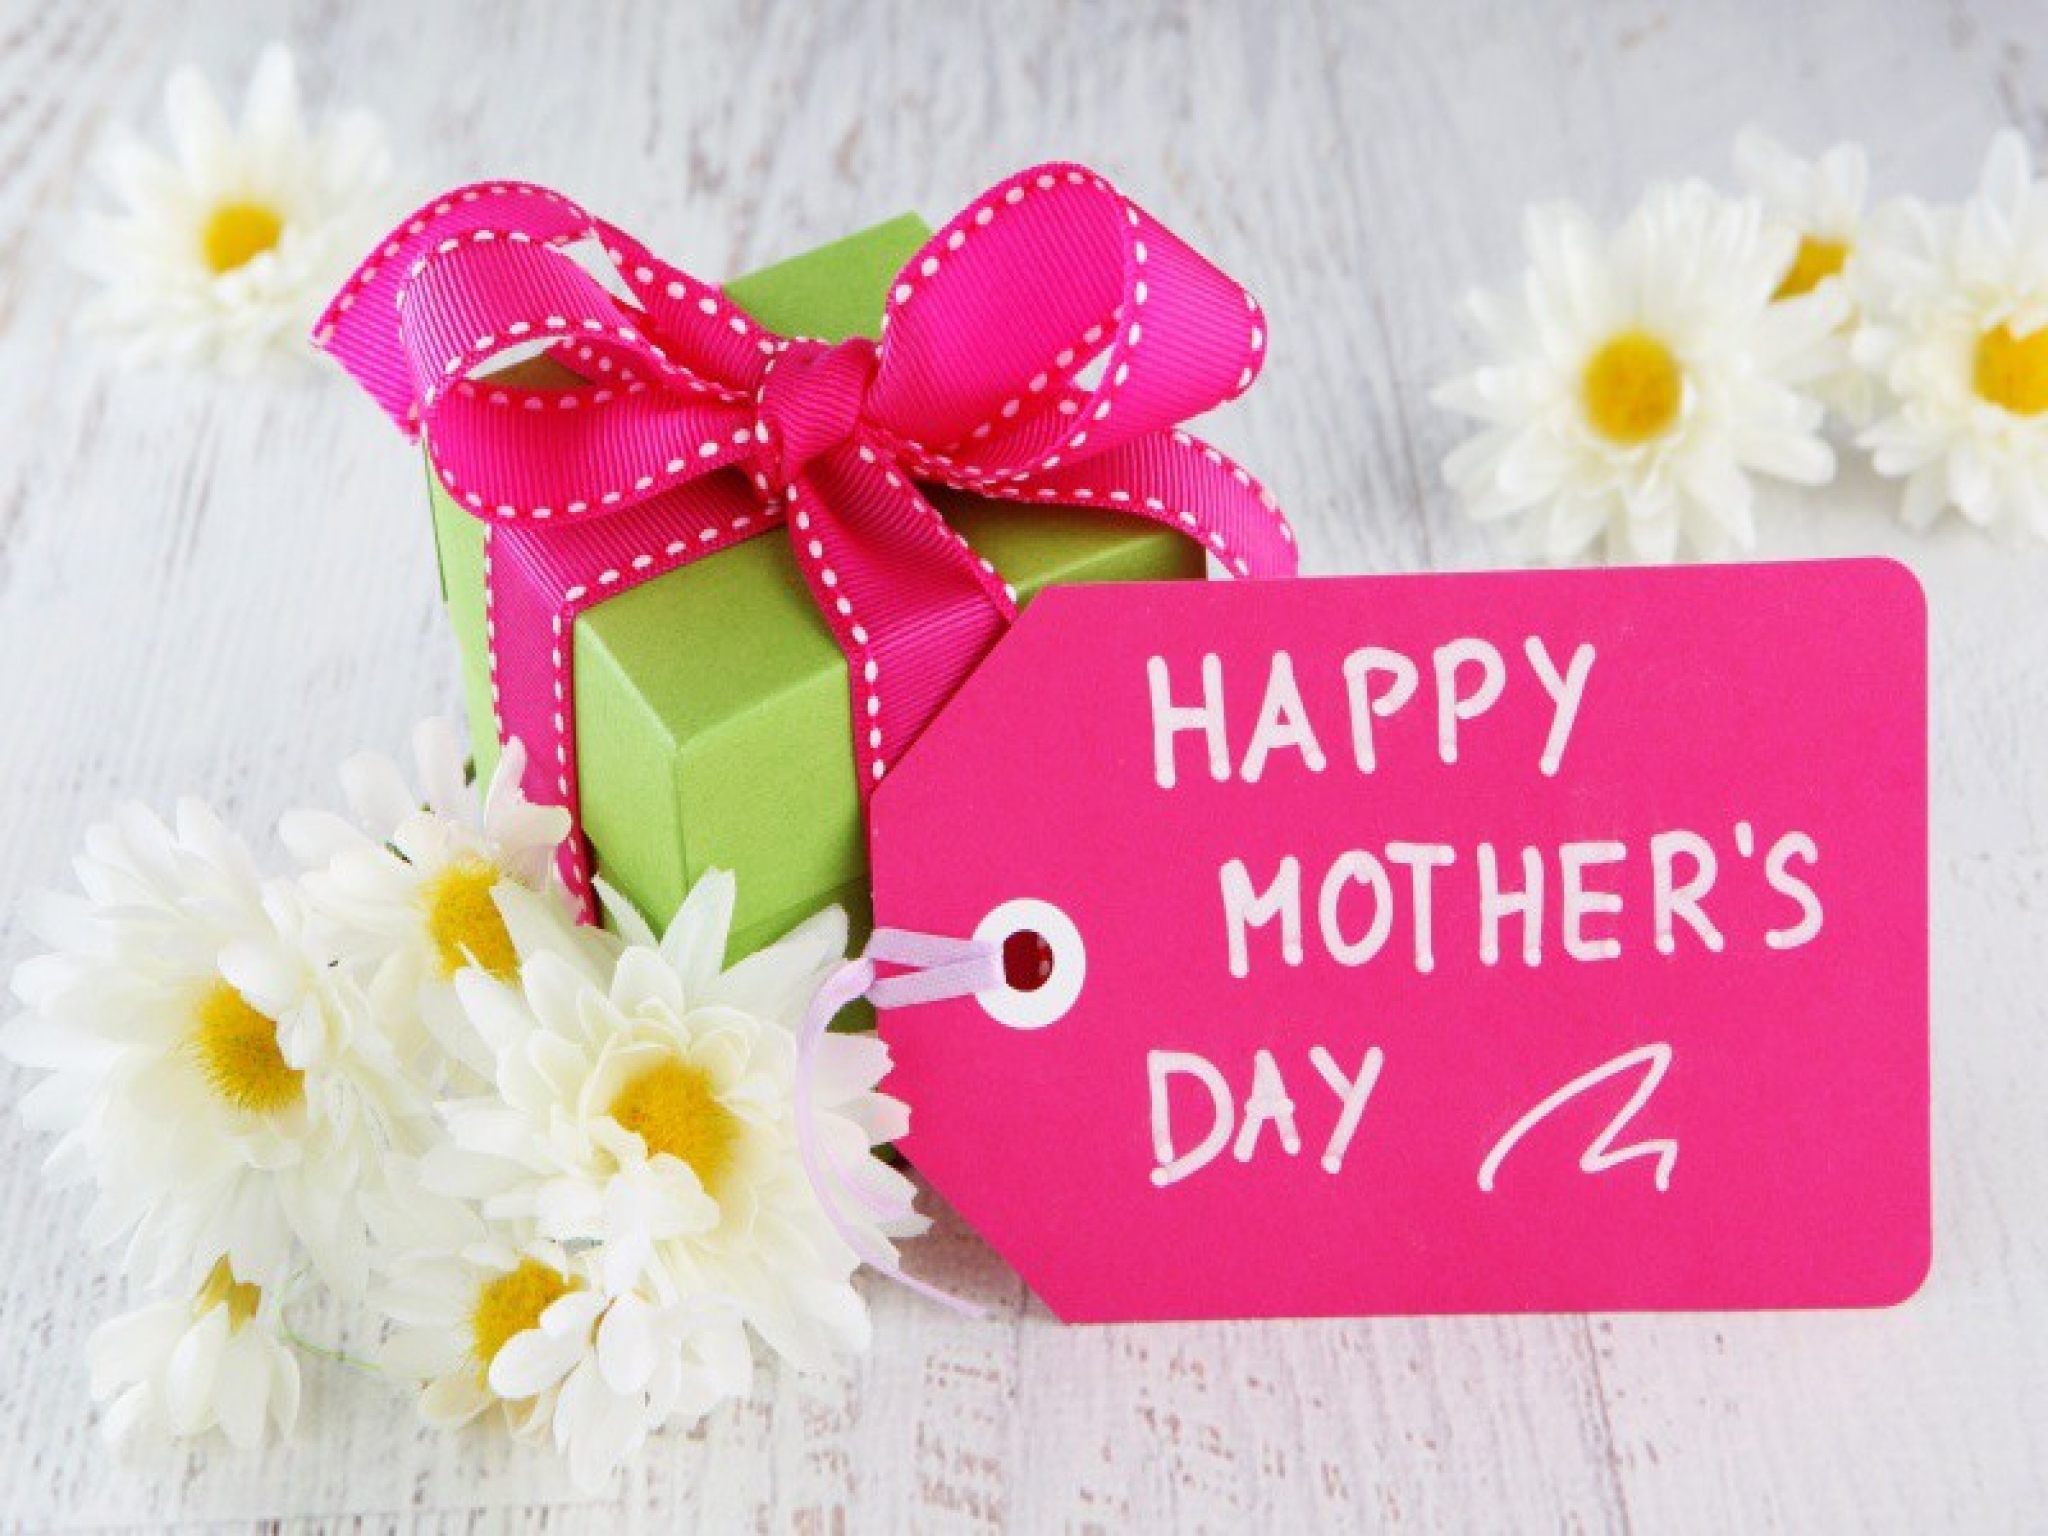 صور وكروت وبطاقات معايدة لعيد الأم - Happy Mother's Day 2020 19